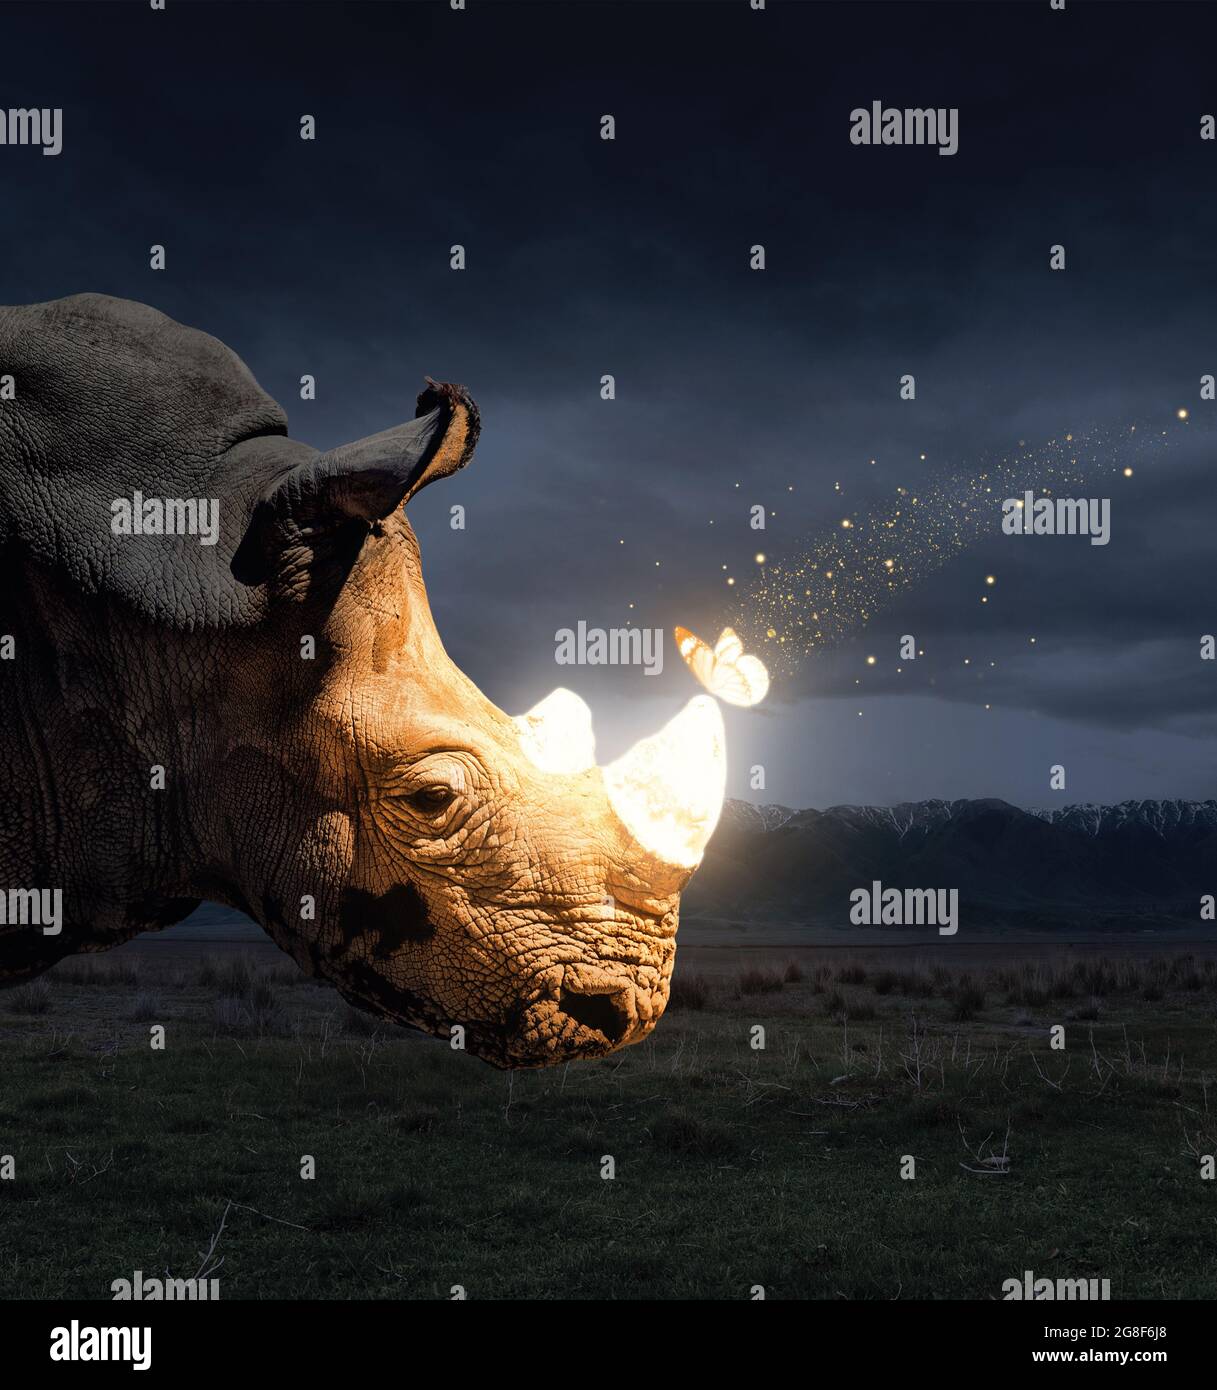 Mariposa mágica sentada en el cuerno de rinoceronte en la naturaleza de la vida salvaje por la noche Foto de stock